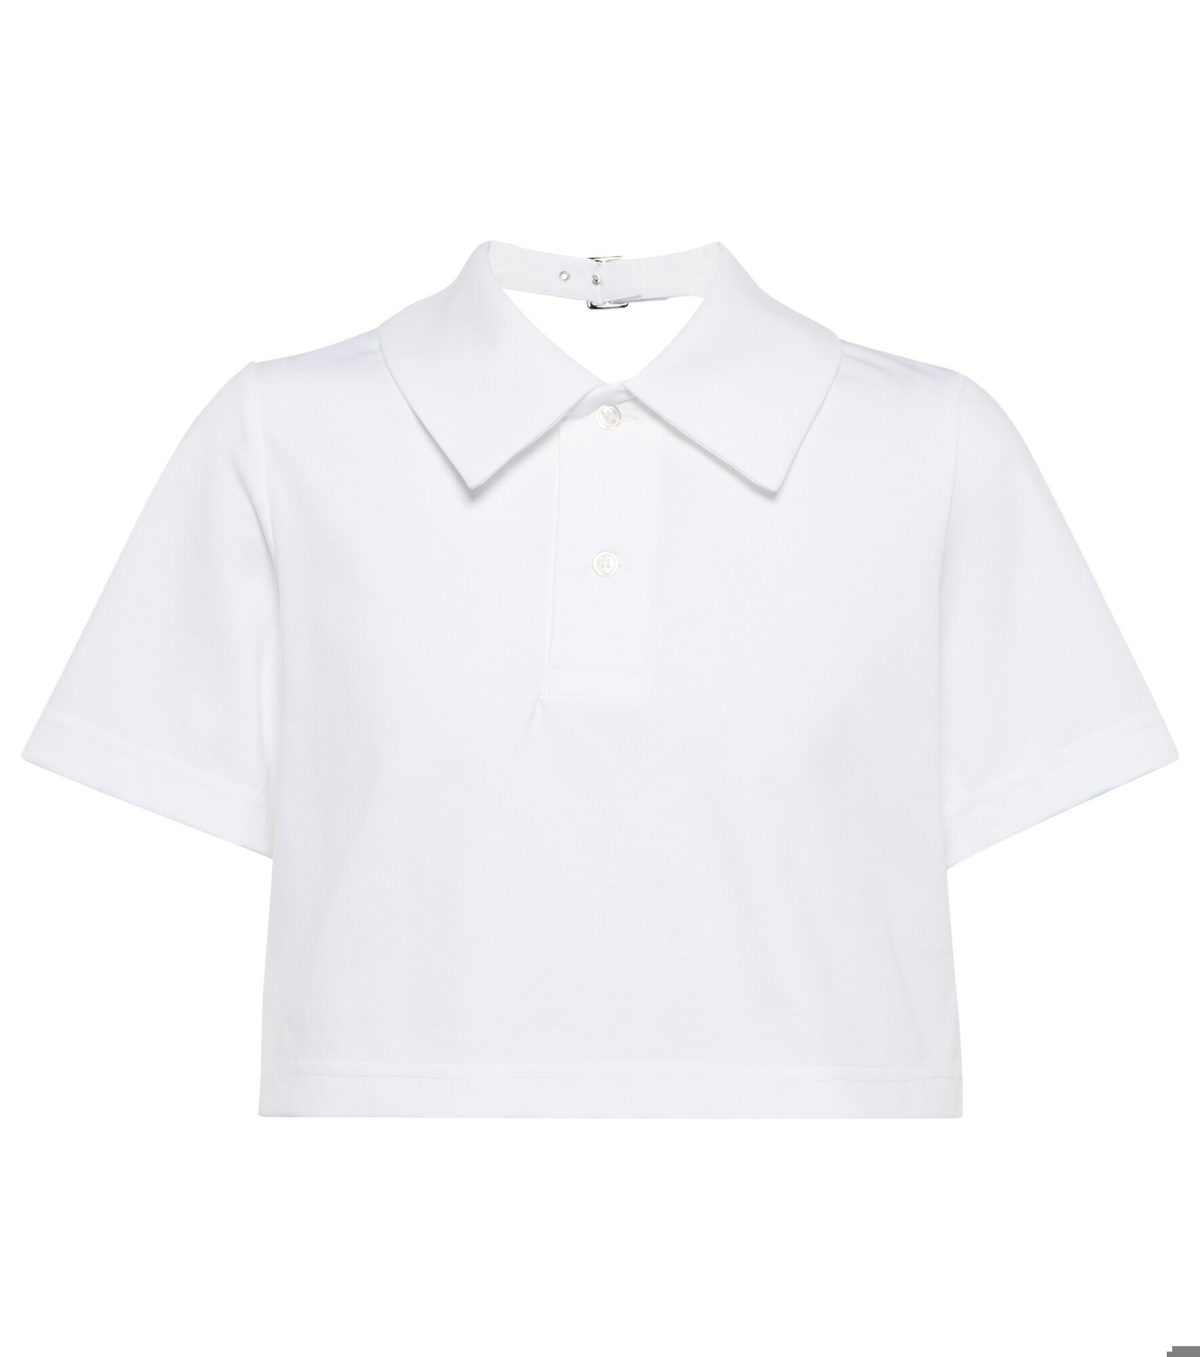 Noir Kei Ninomiya - Cropped polo shirt Noir Kei Ninomiya